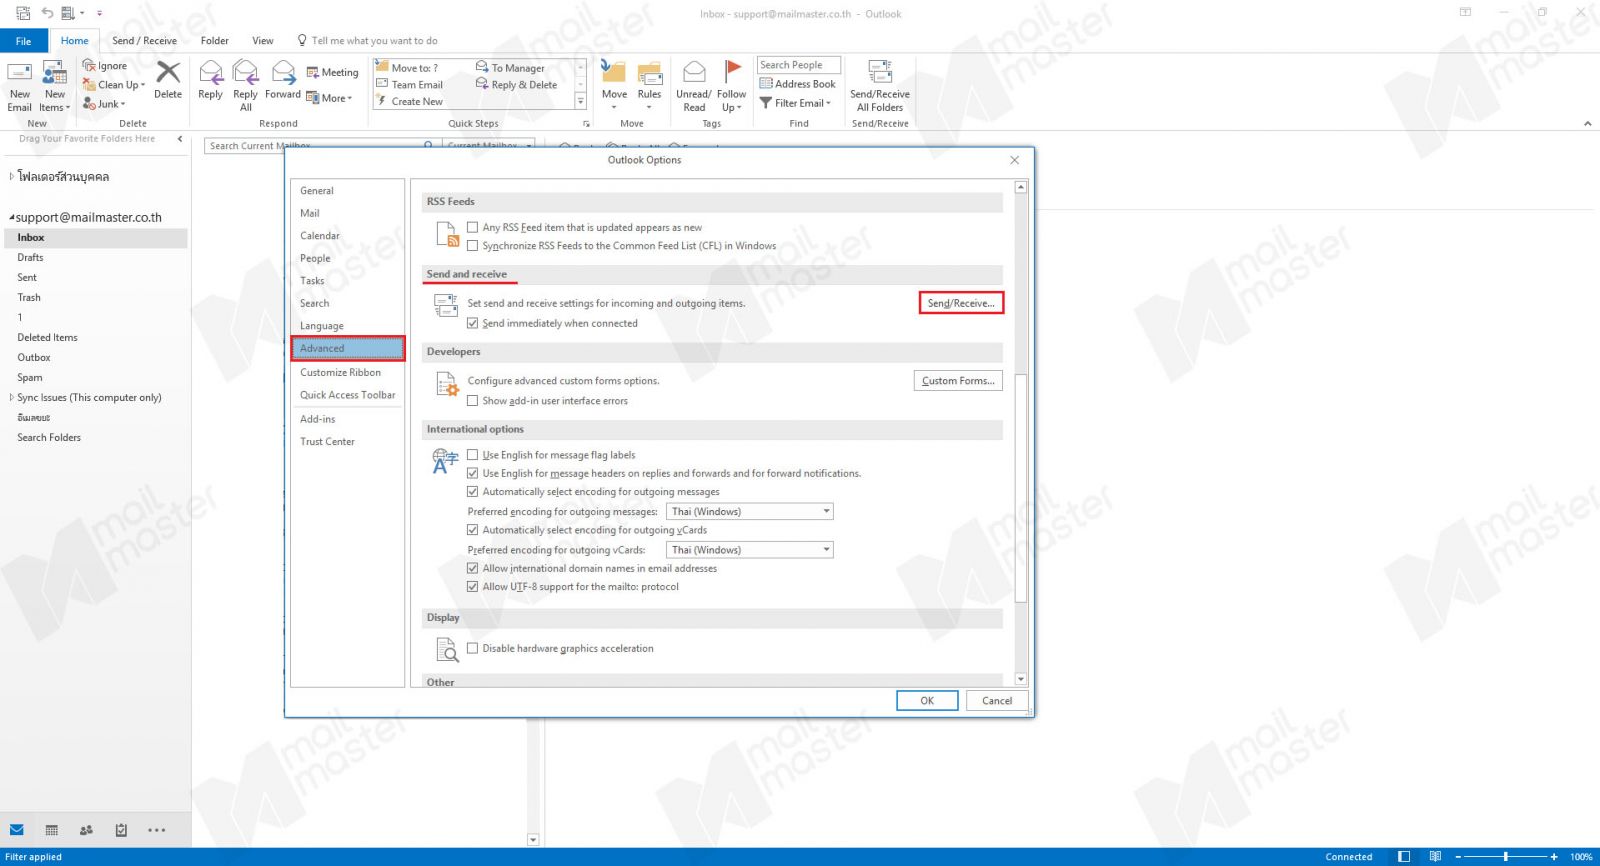 การ Sync ข้อมูล Send & Receive ของ Outlook กับ server